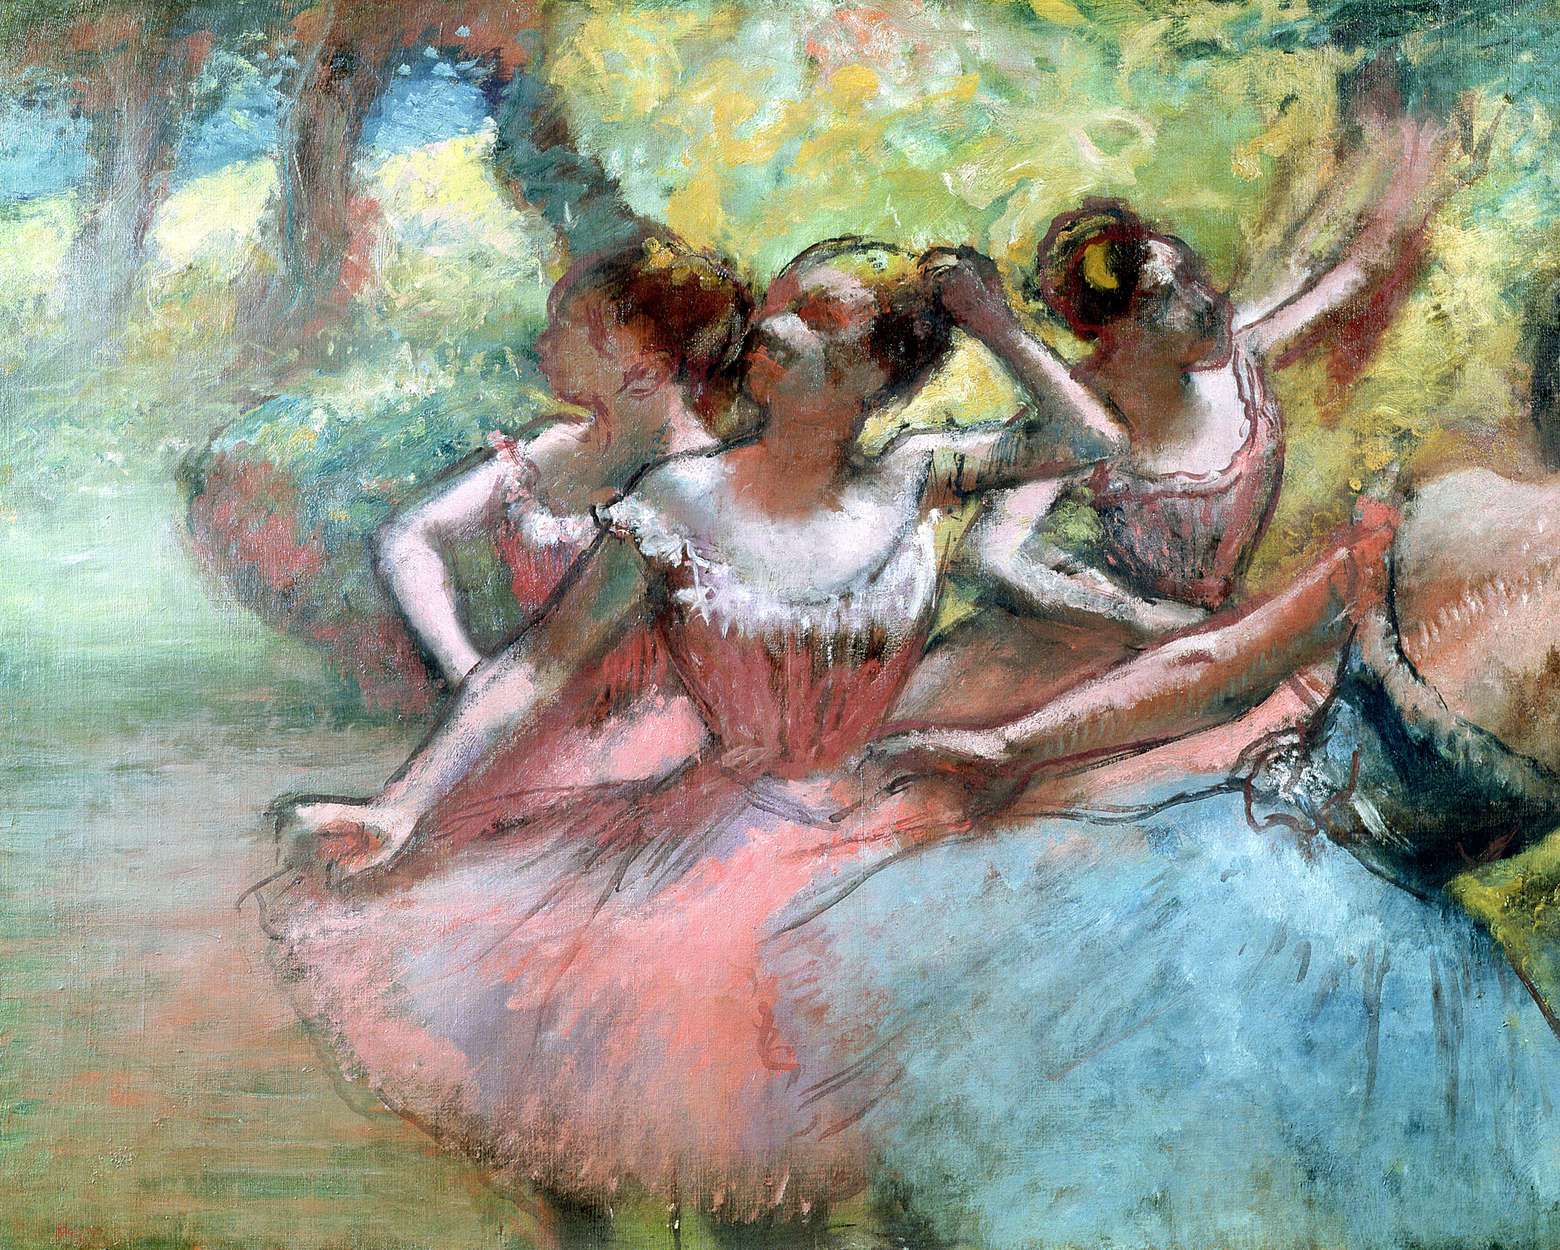             Fototapete "Vier Ballerinas auf der Bühne" von Hilaire Degas
        